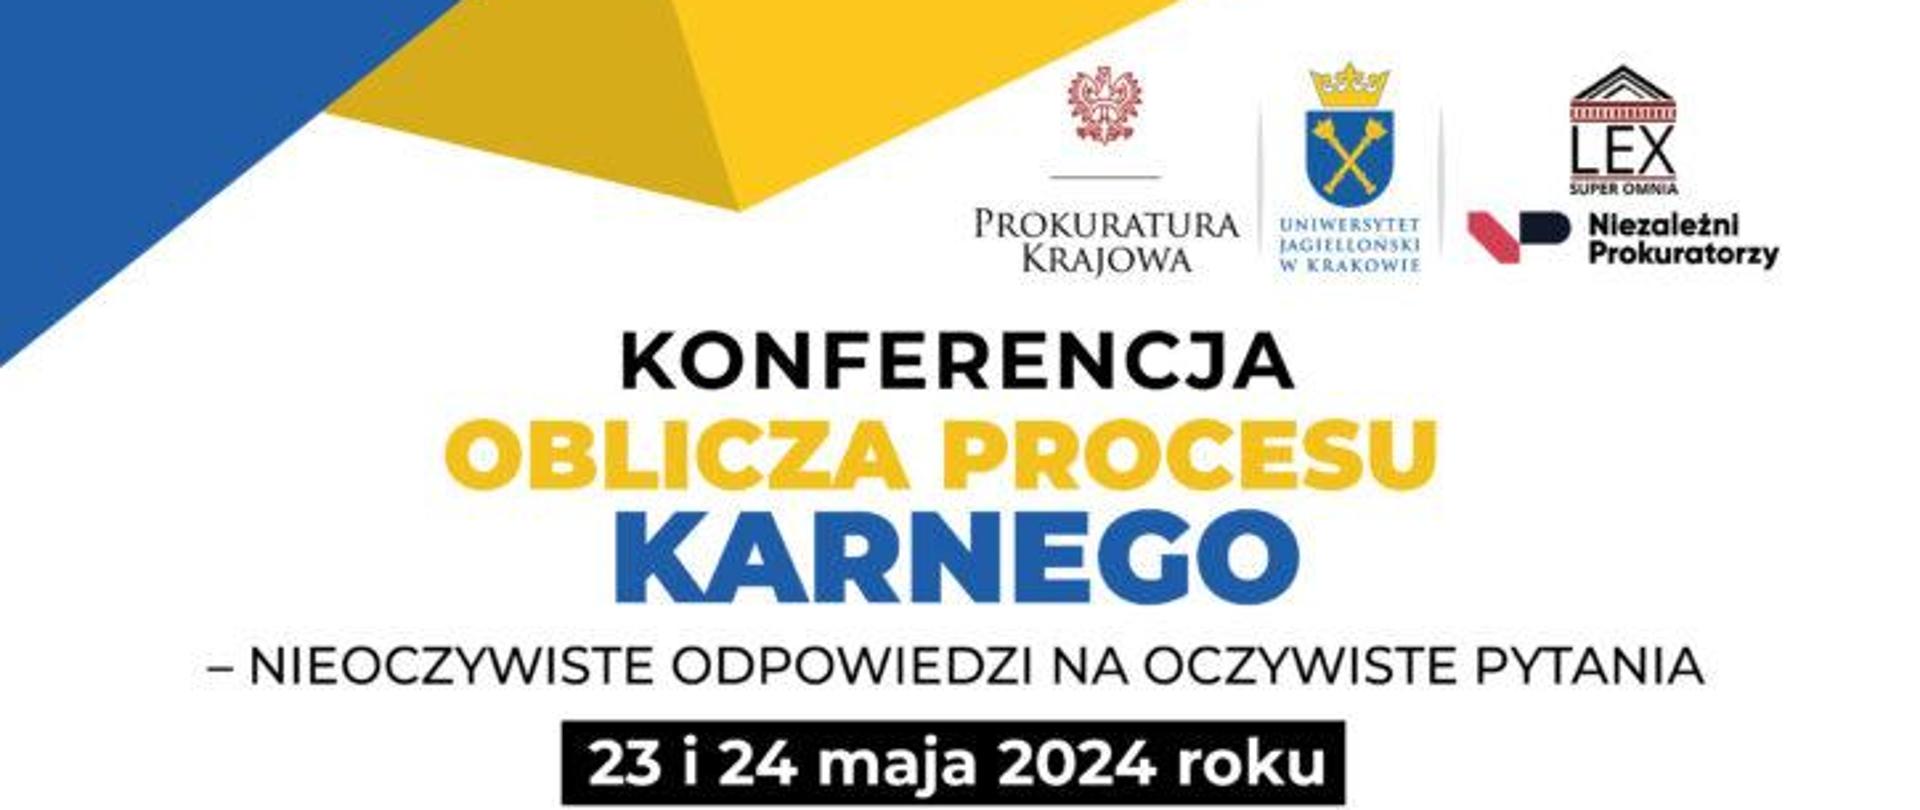 Konferencja Kraków 23-24.05.2024 r. 